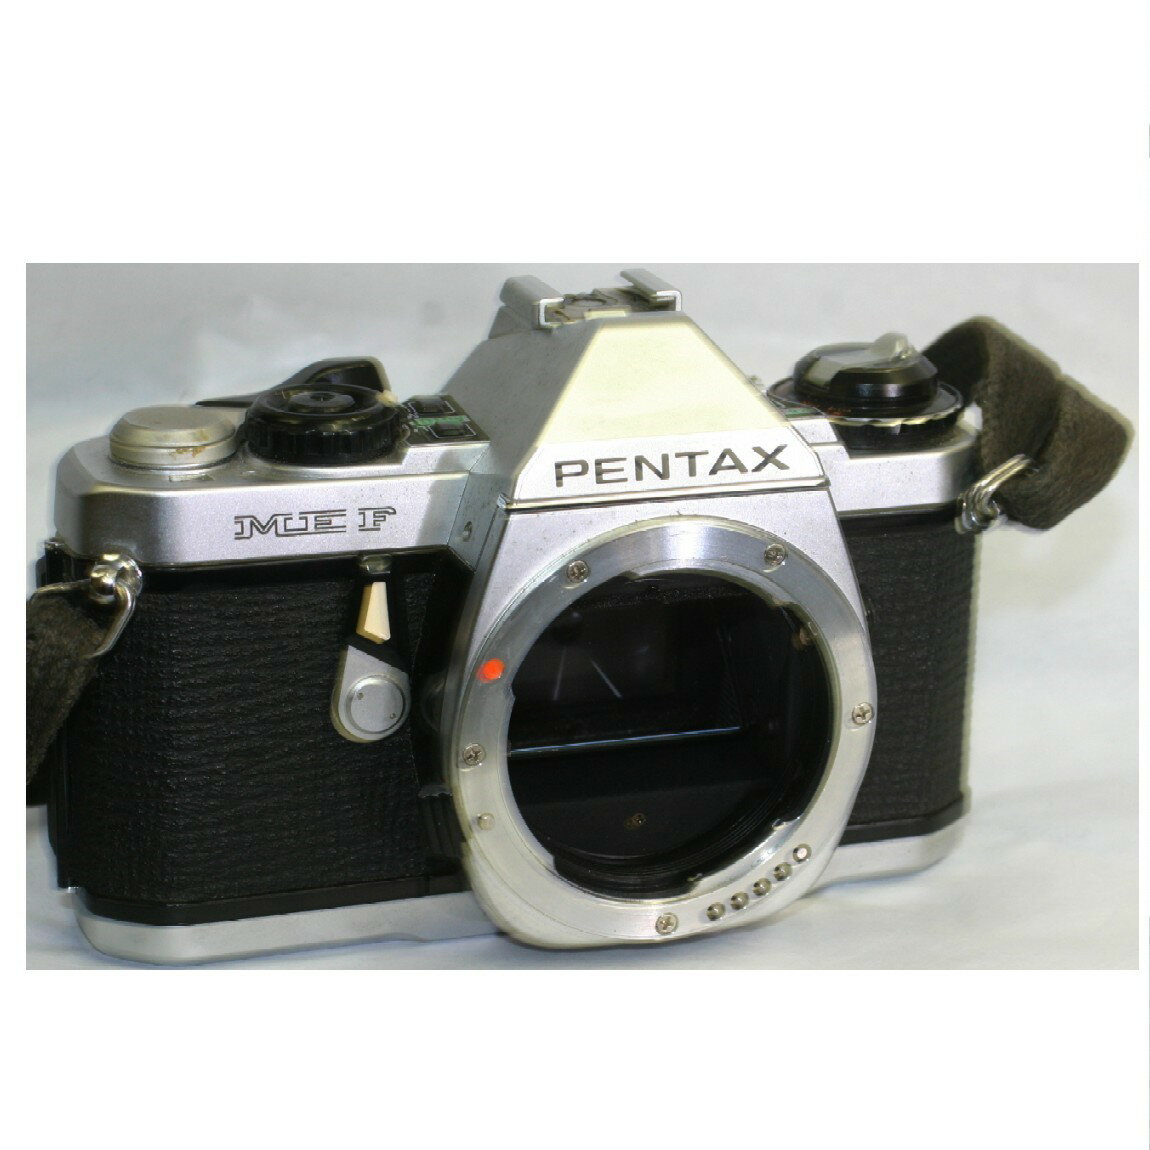 アサヒペンタックスの35mmフィルム使用の1眼レフカメラMEFボディの完動品の出品です。付属品はケースです。シャッターは正常で露出計も正常に作動しますのでお勧めです。念のために1ヶ月の保障をお付けします。管理番号○F15-3-1